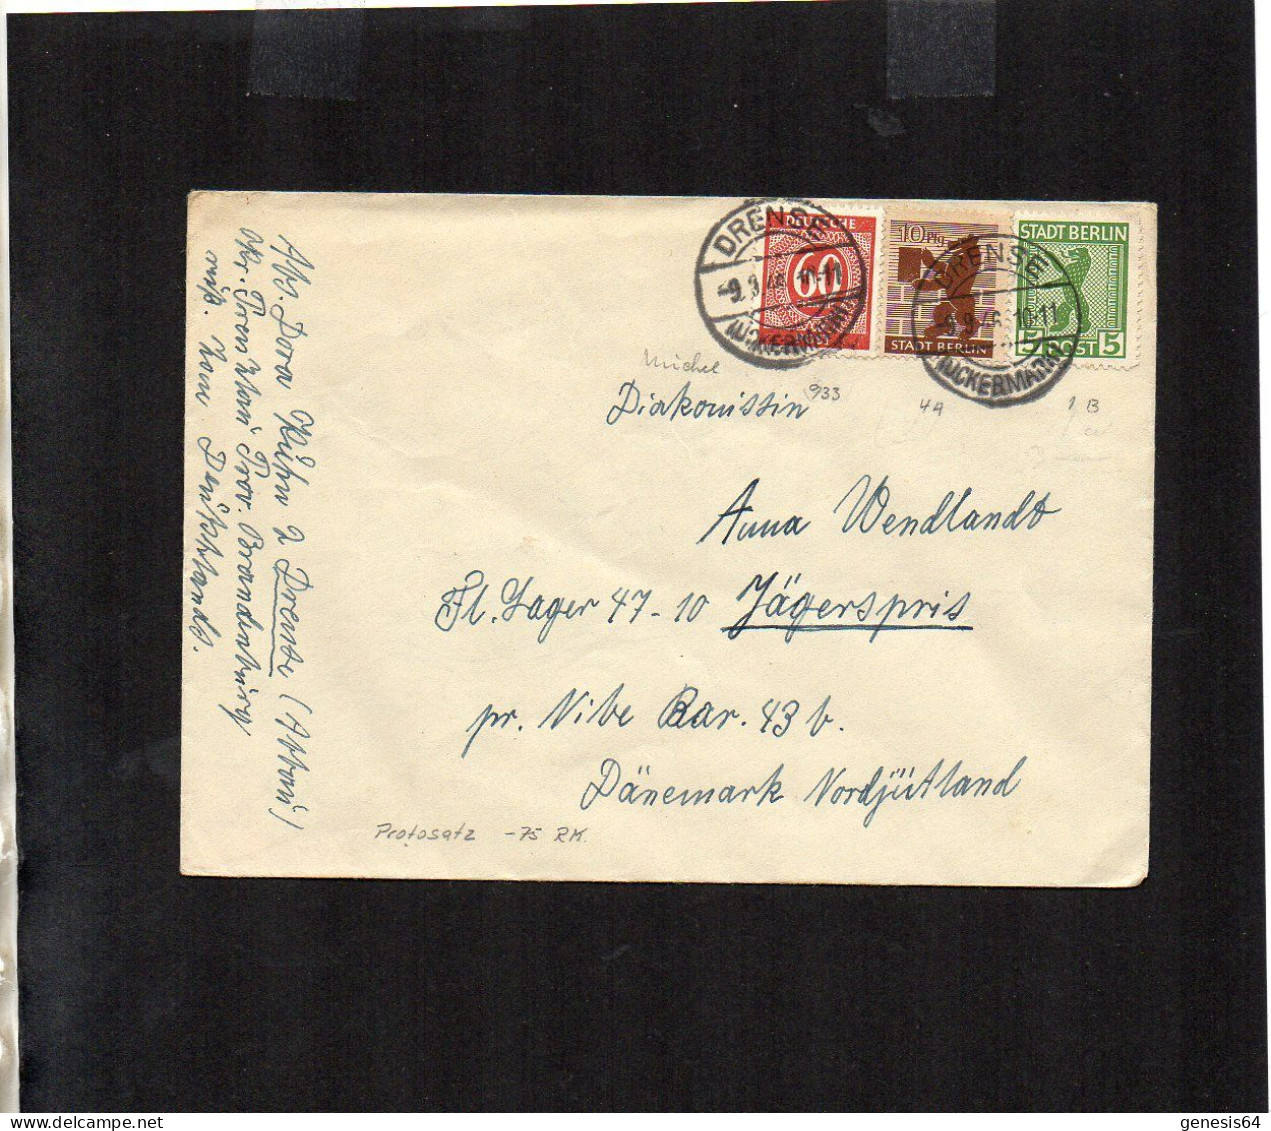 Berlin Brandenburg - Auslandsbrief Mit Mischfrankatur - Drense ==> Dänemark 1.7.46 - P2 (1ZKSBZ052) - Berlin & Brandenburg